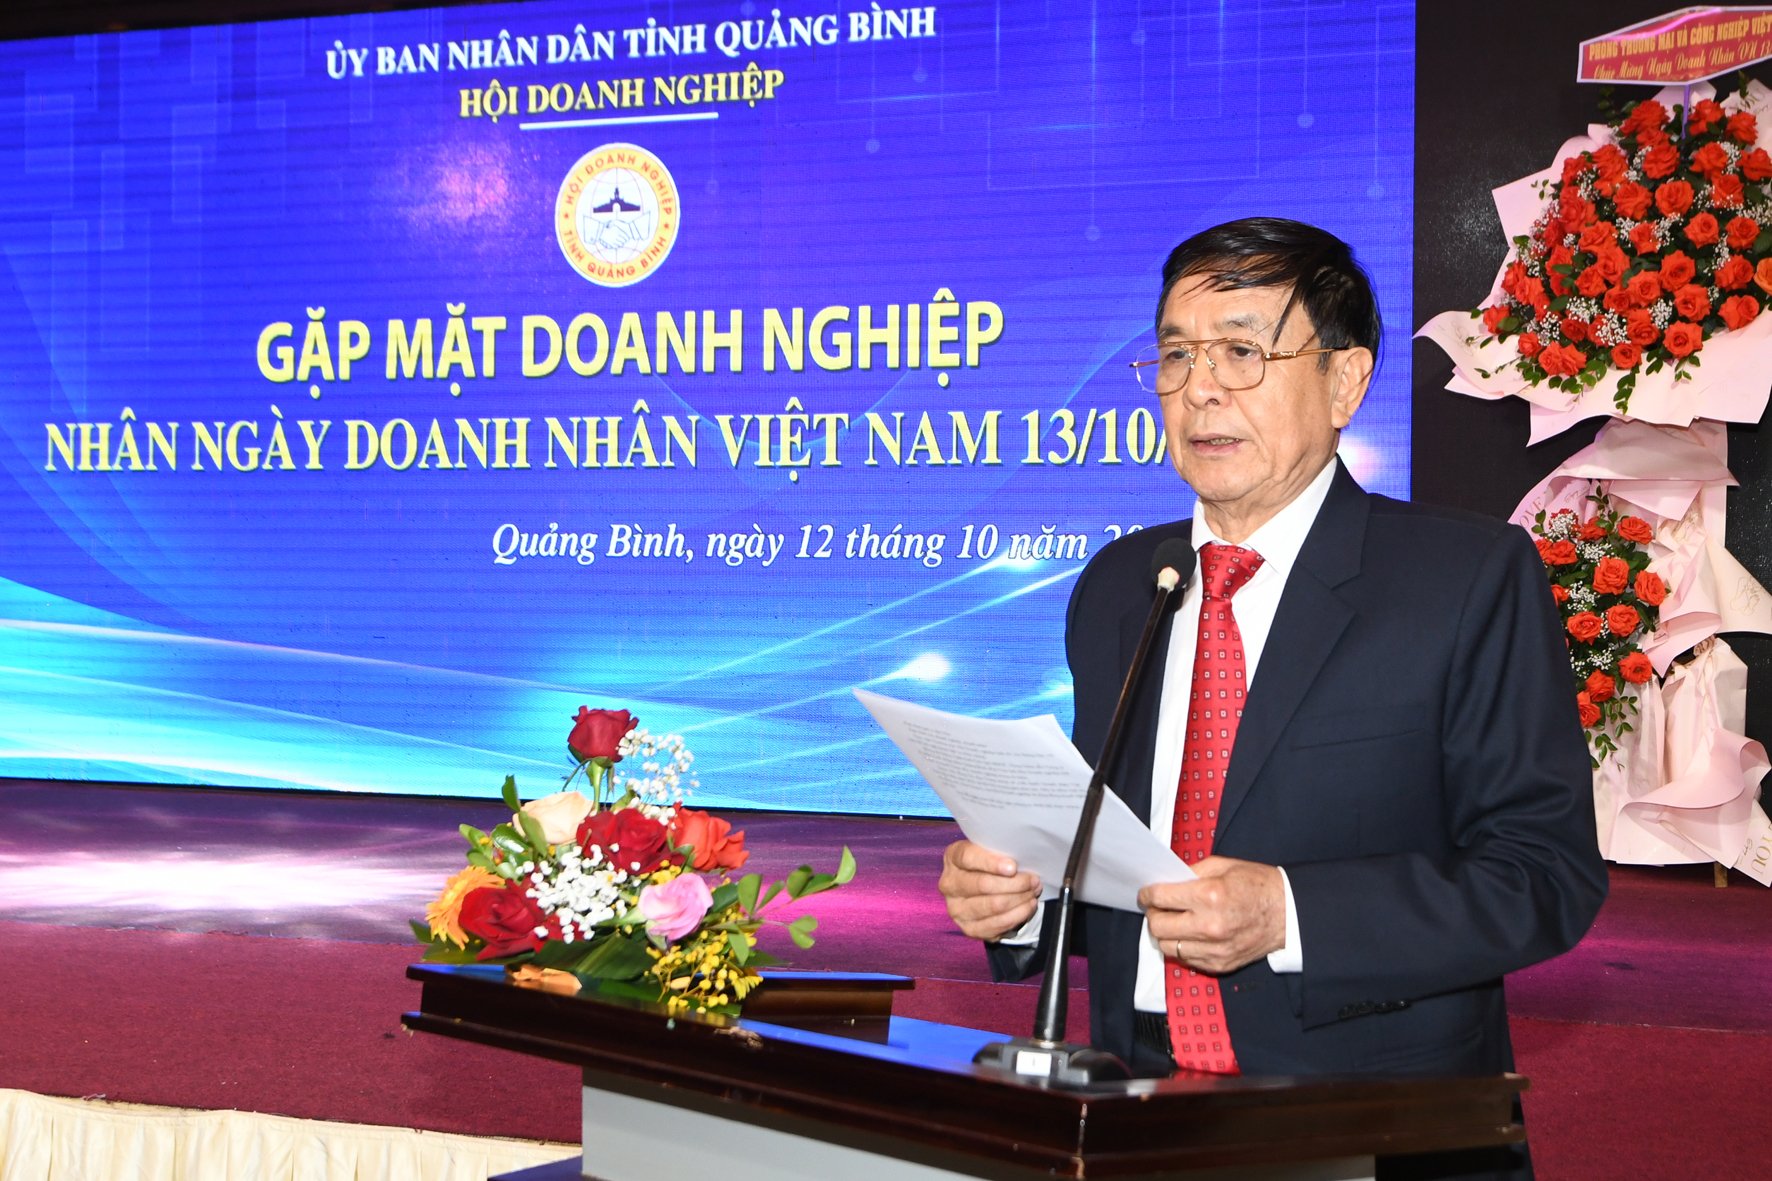 Ông Lê Thuận Văn, Chủ tịch Hội doanh nghiệp tỉnh phát biểu trong buổi gặp mặt